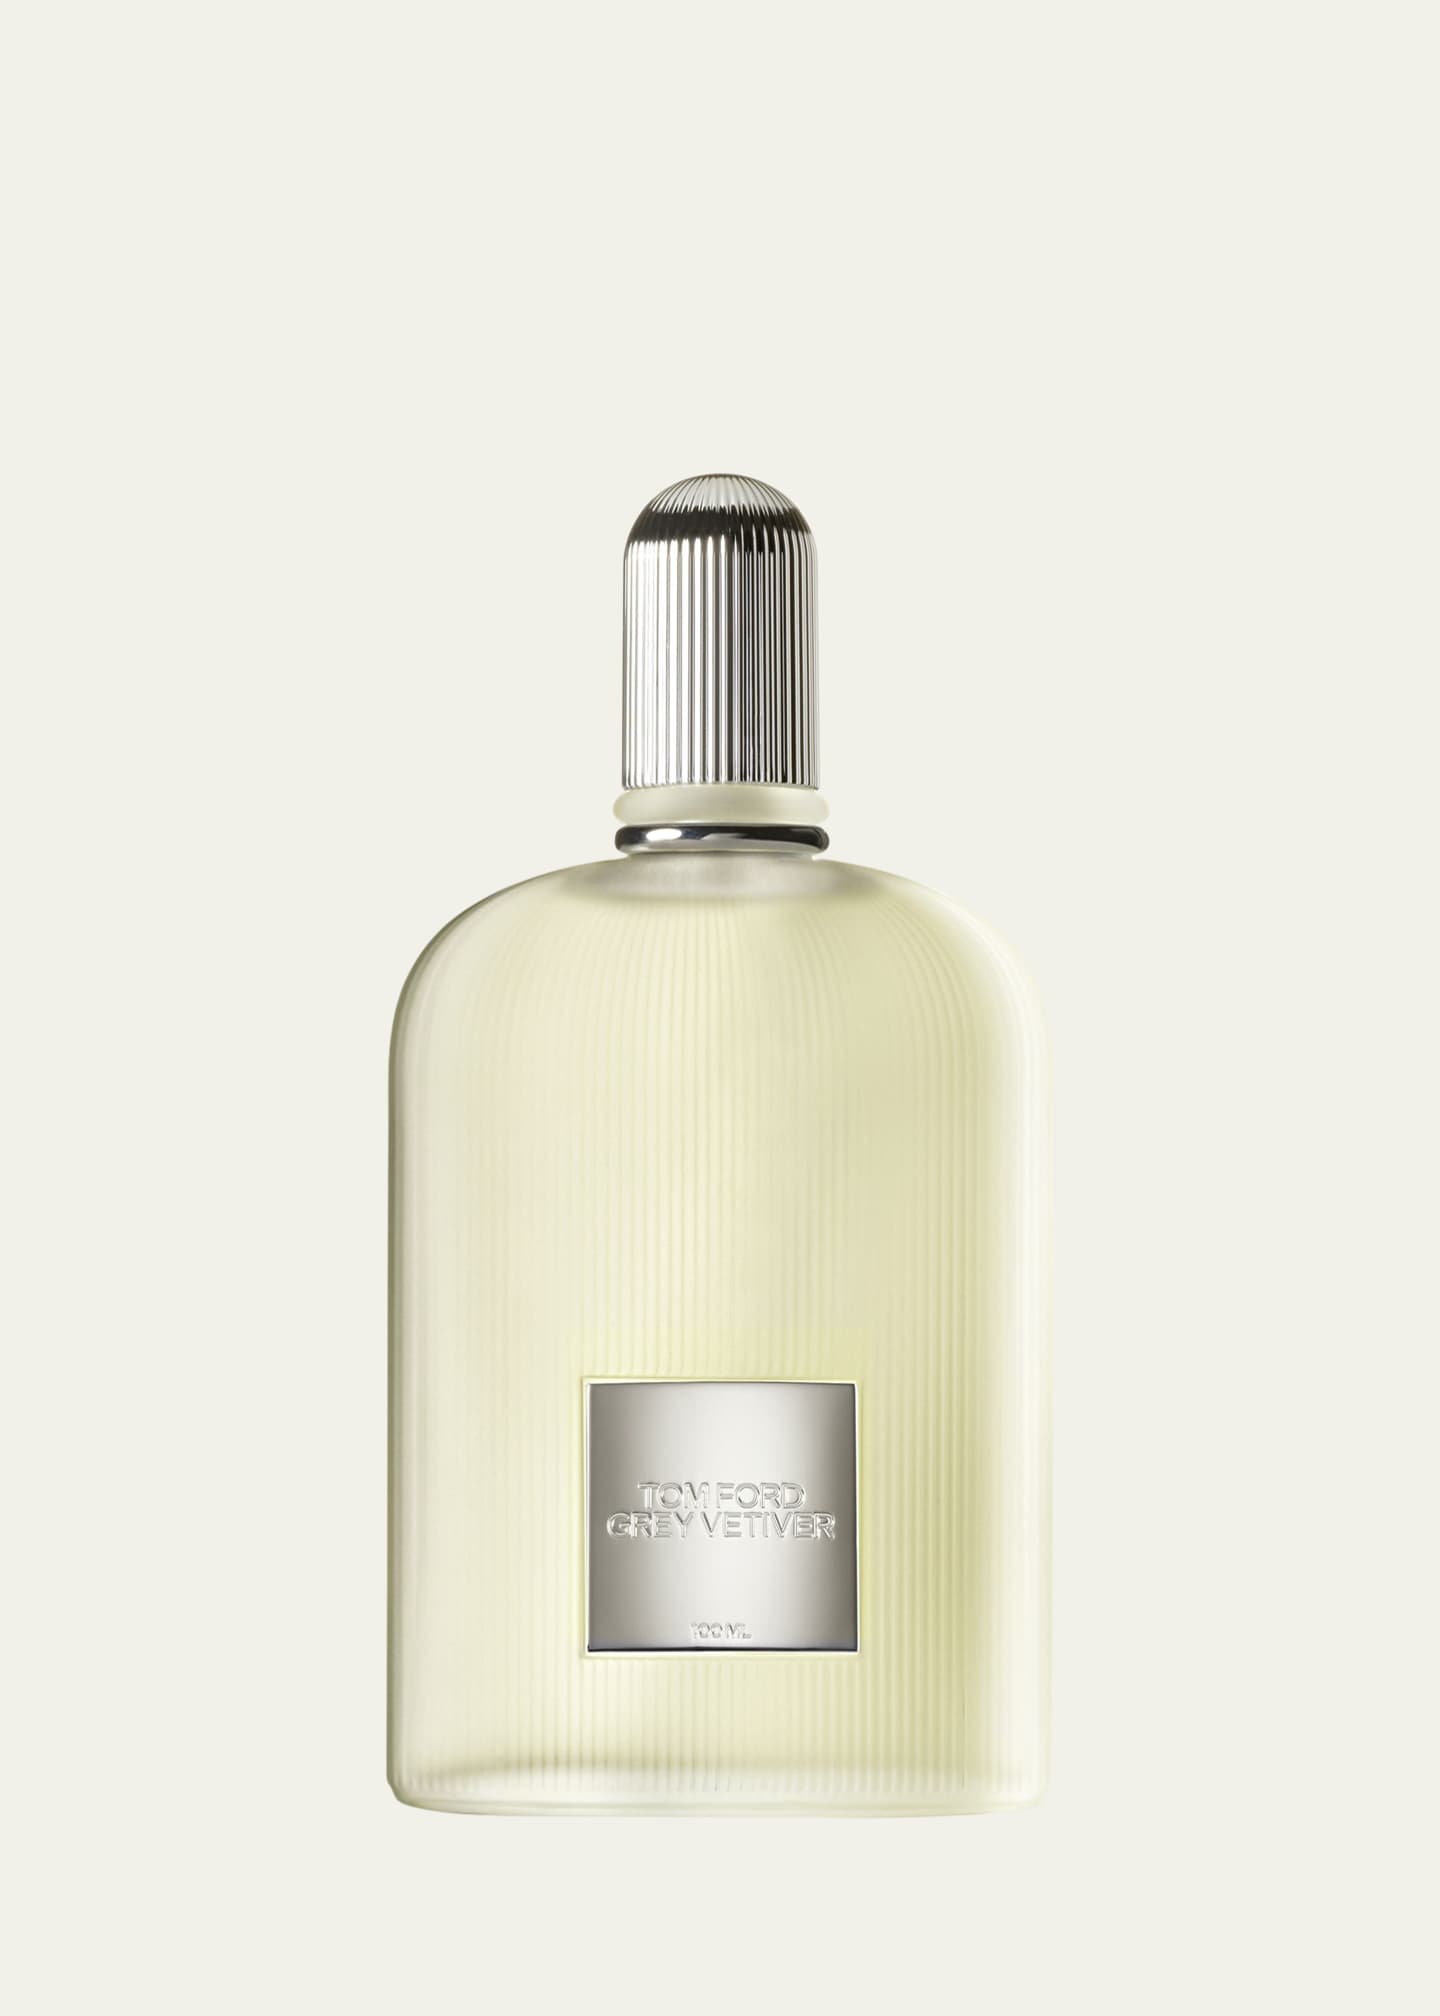 TOM FORD Grey Vetiver Eau De Parfum, 3.4 oz. - Bergdorf Goodman